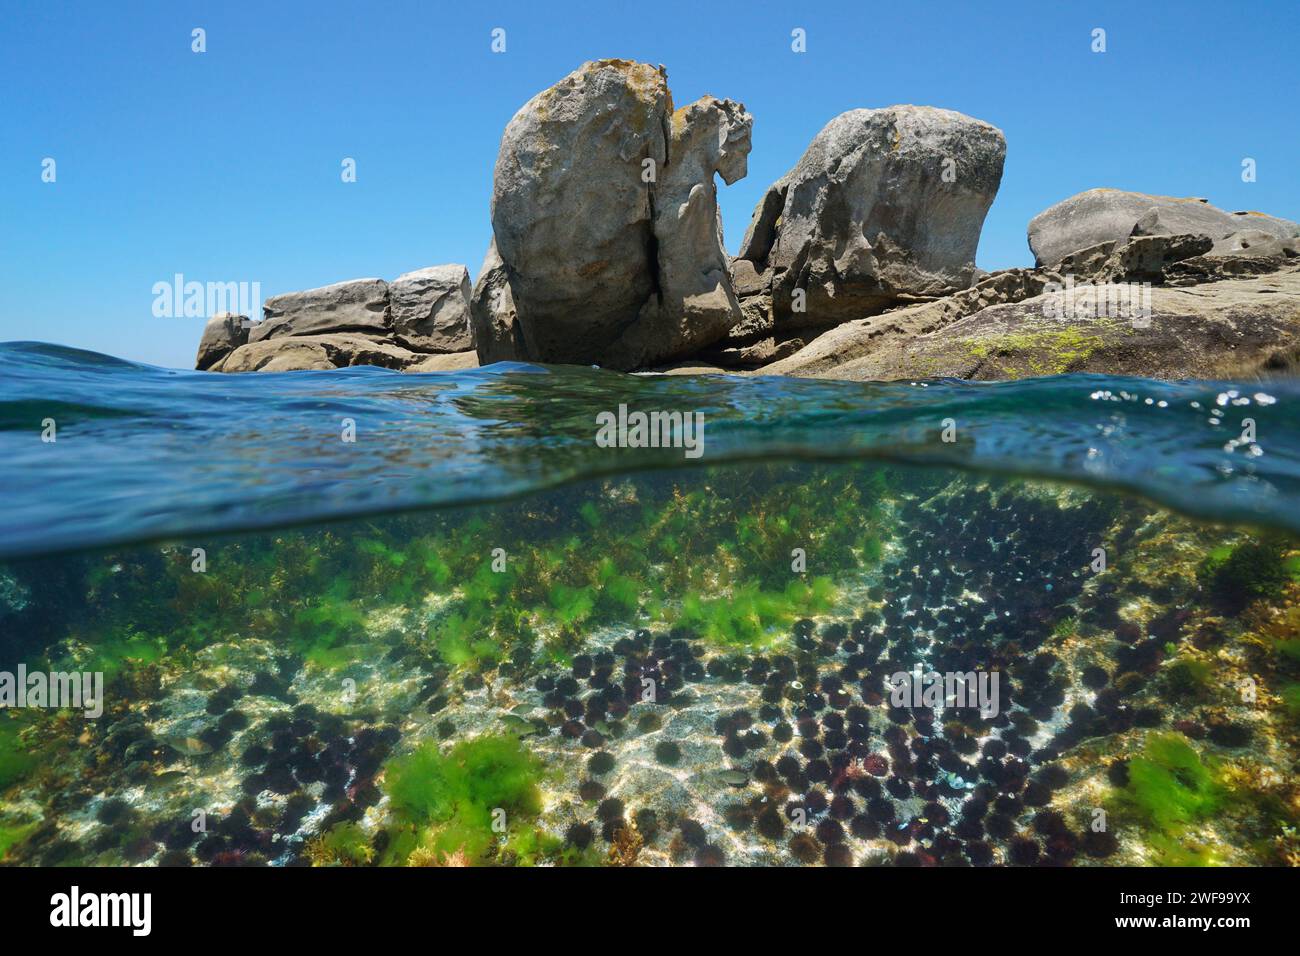 Viele Seeigel unter Wasser mit großen Felsen am Meer, Meereslandschaft des Atlantischen Ozeans, geteilter Blick über und unter der Wasseroberfläche, Spanien, Galicien Stockfoto